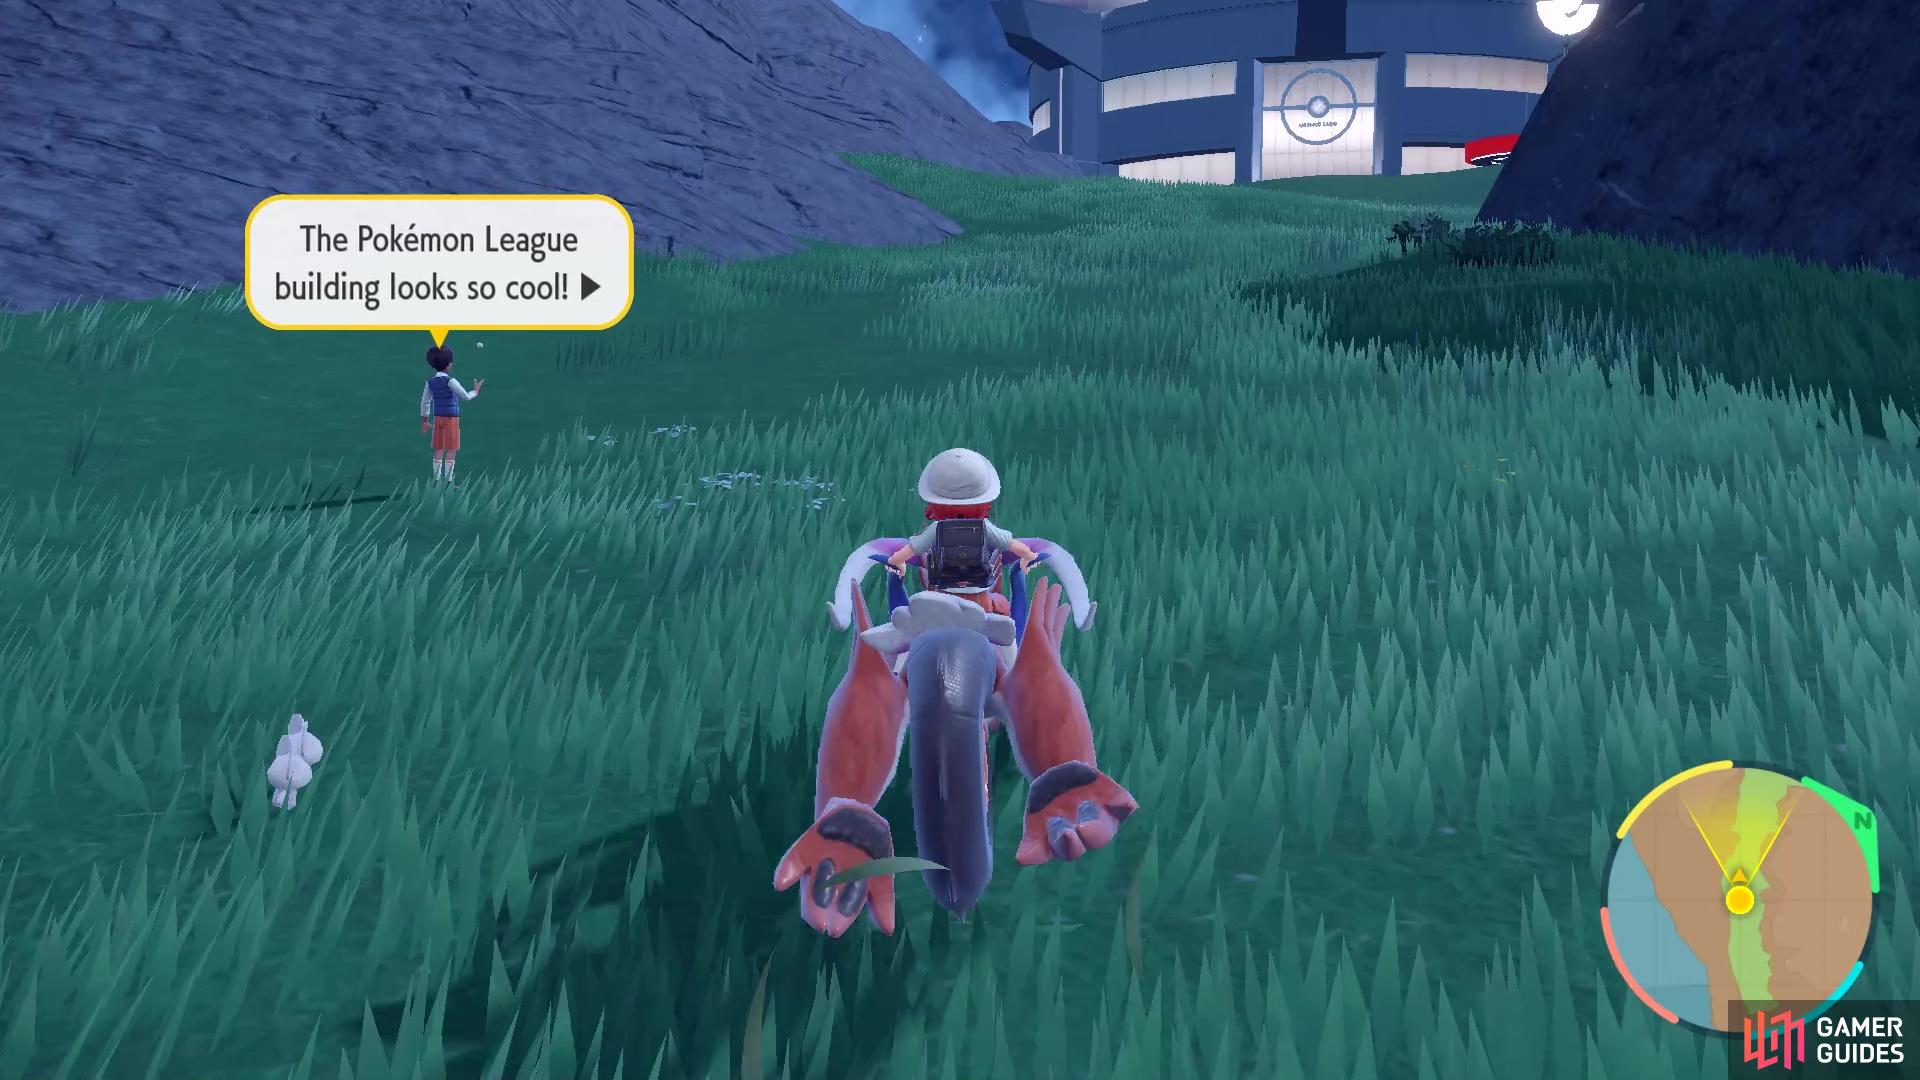 Did you head to the Pokémon League building via your Pokémon mount?